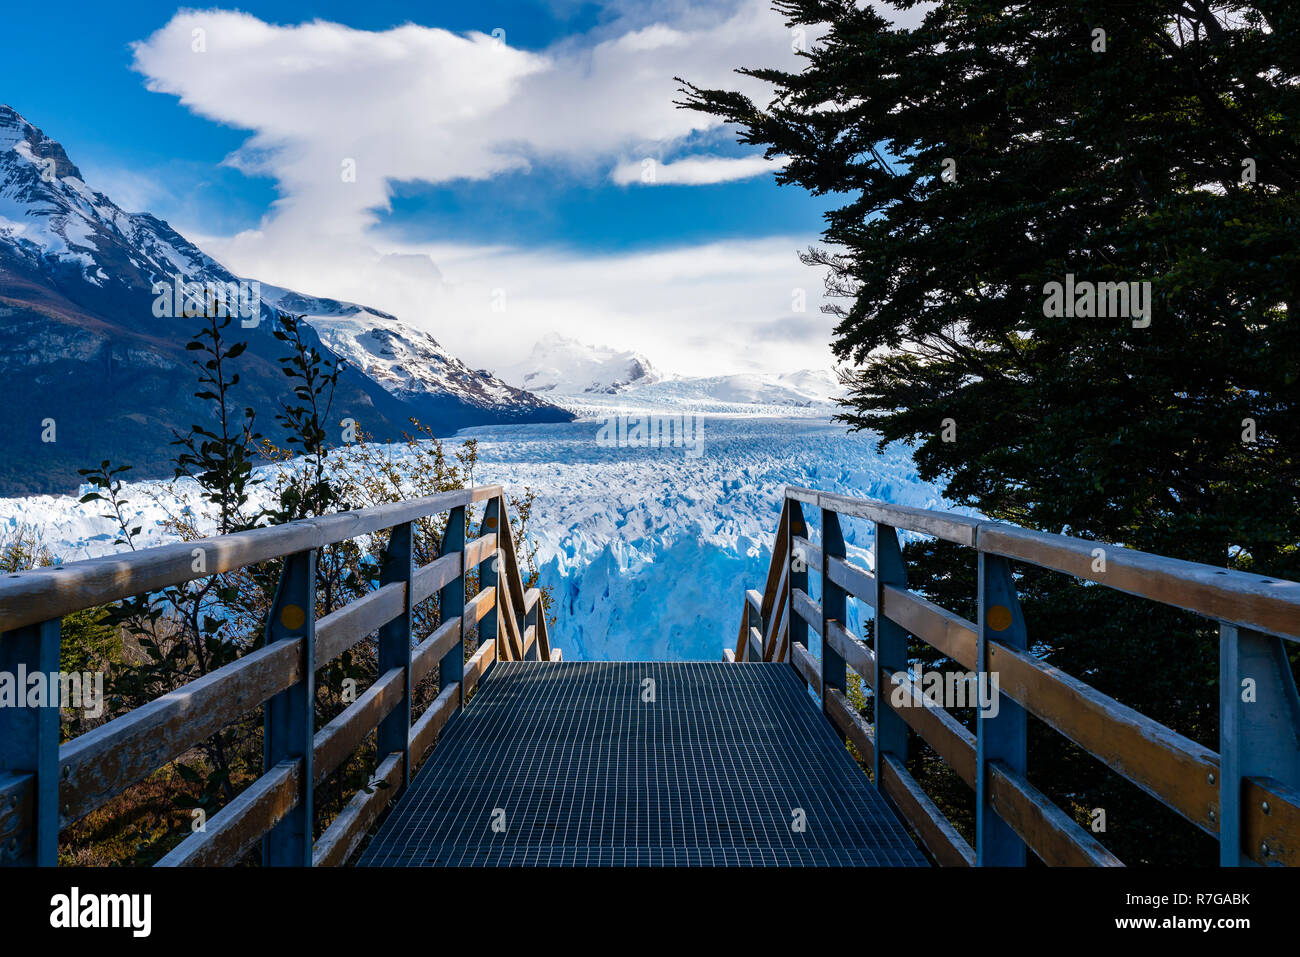 Perito Moreno Glacier in Argentina Stock Photo